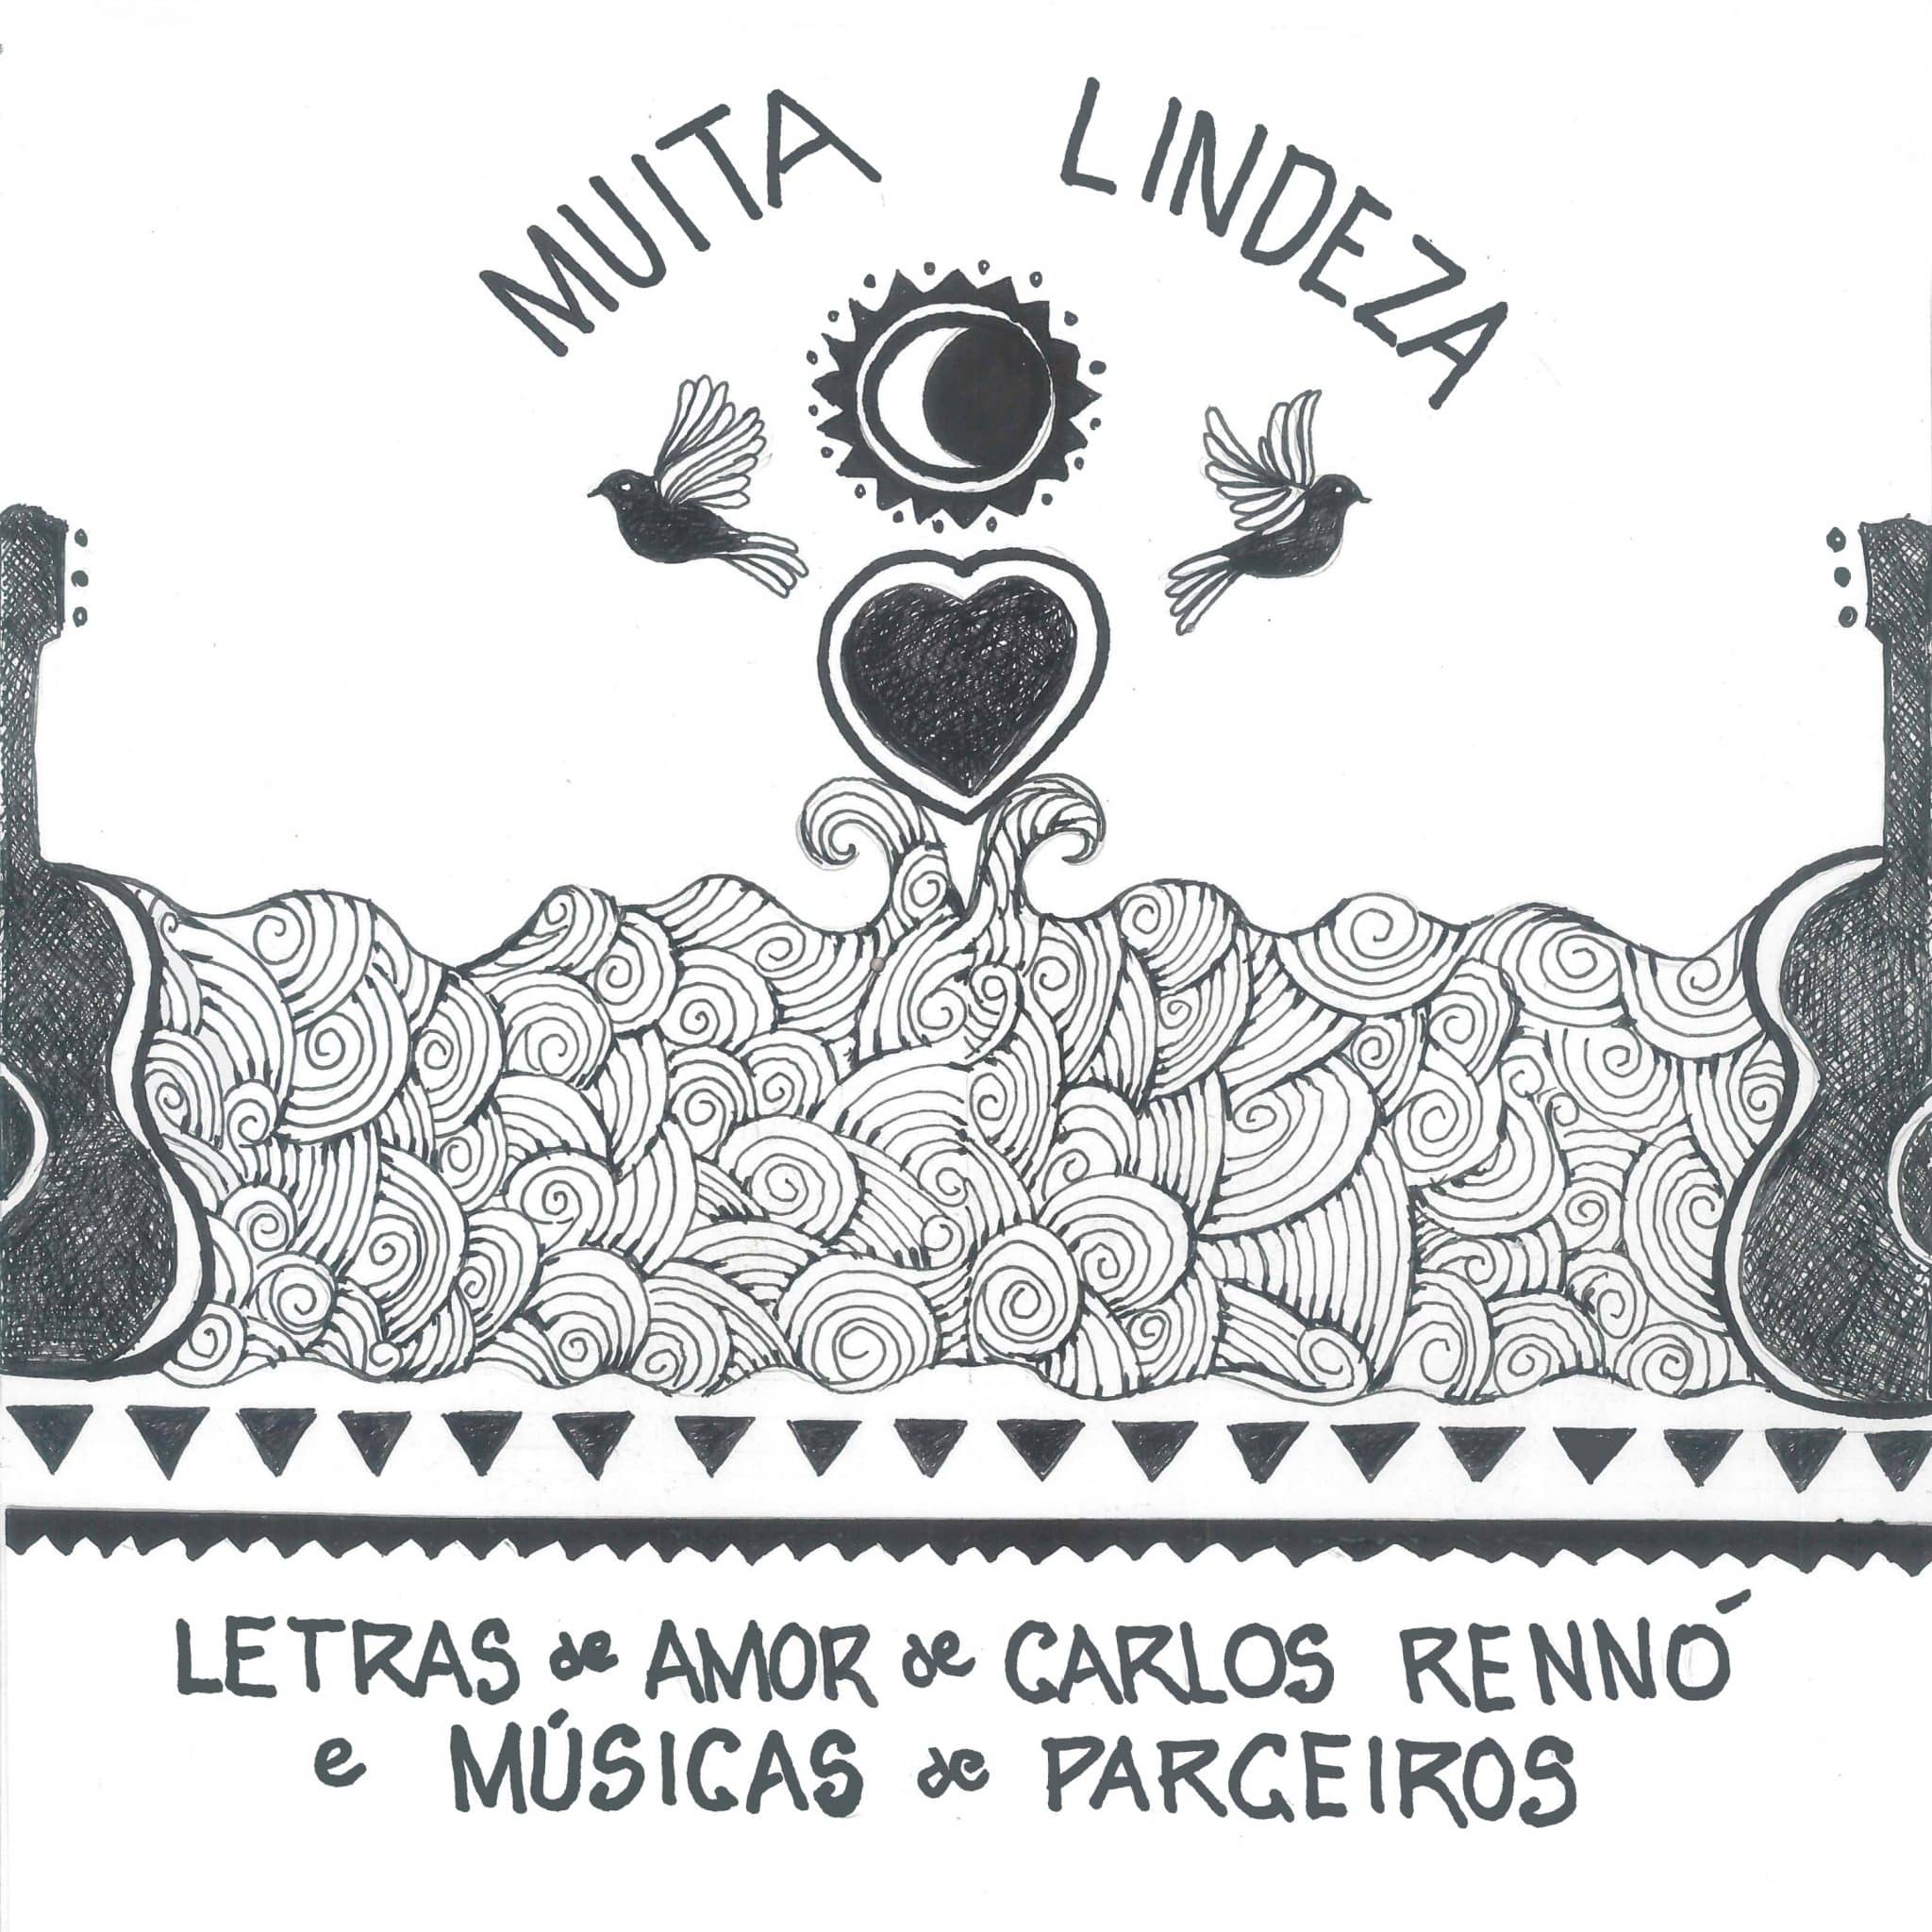 revistaprosaversoearte.com - Álbum 'Muita Lindeza – Letras de amor de Carlos Rennó e músicas de parceiros'